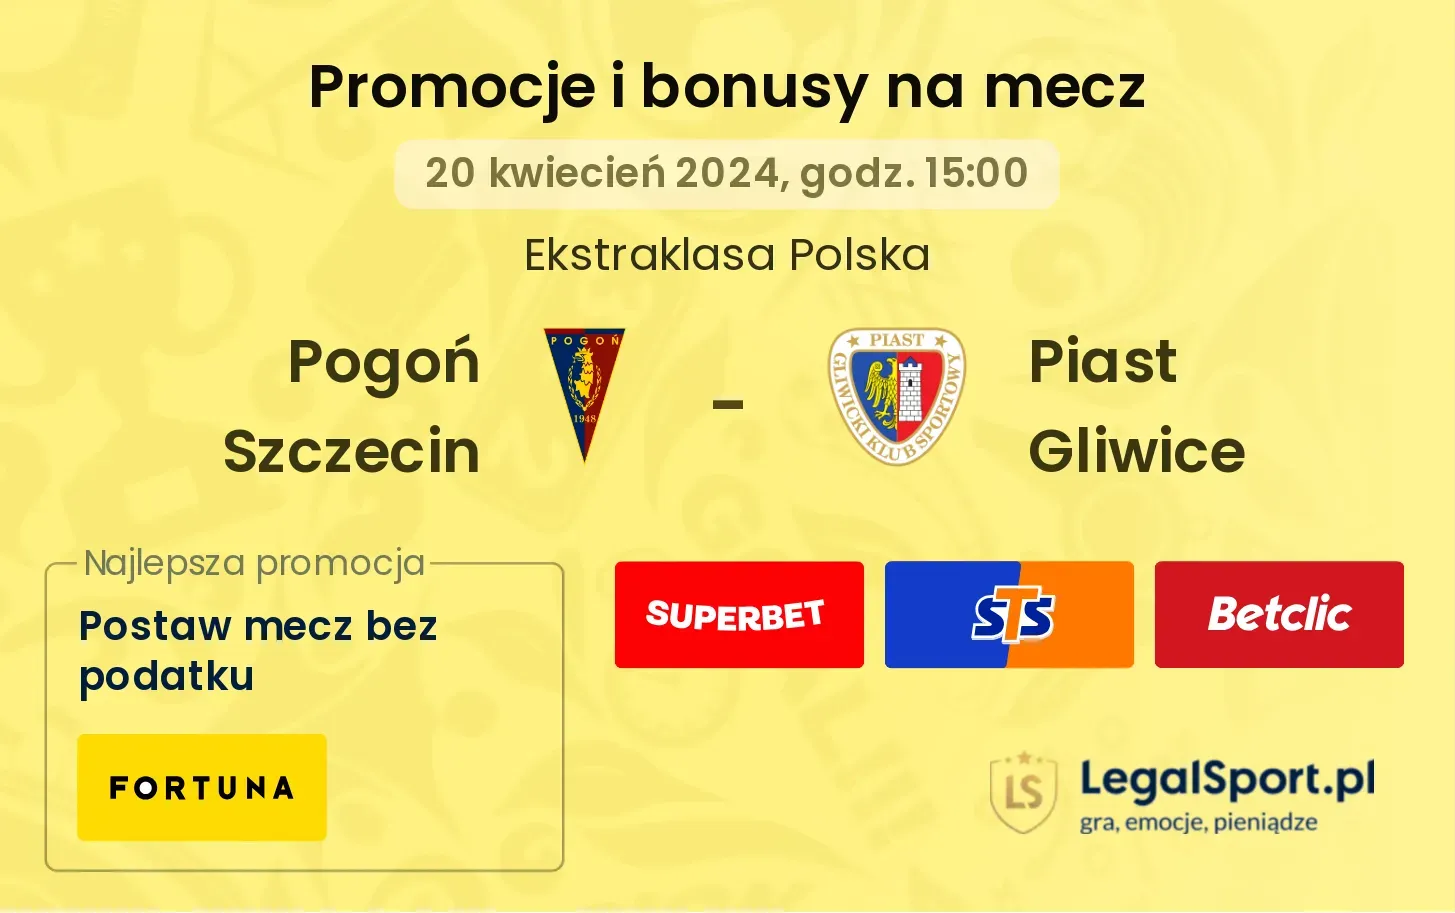 Pogoń Szczecin - Piast Gliwice promocje bonusy na mecz